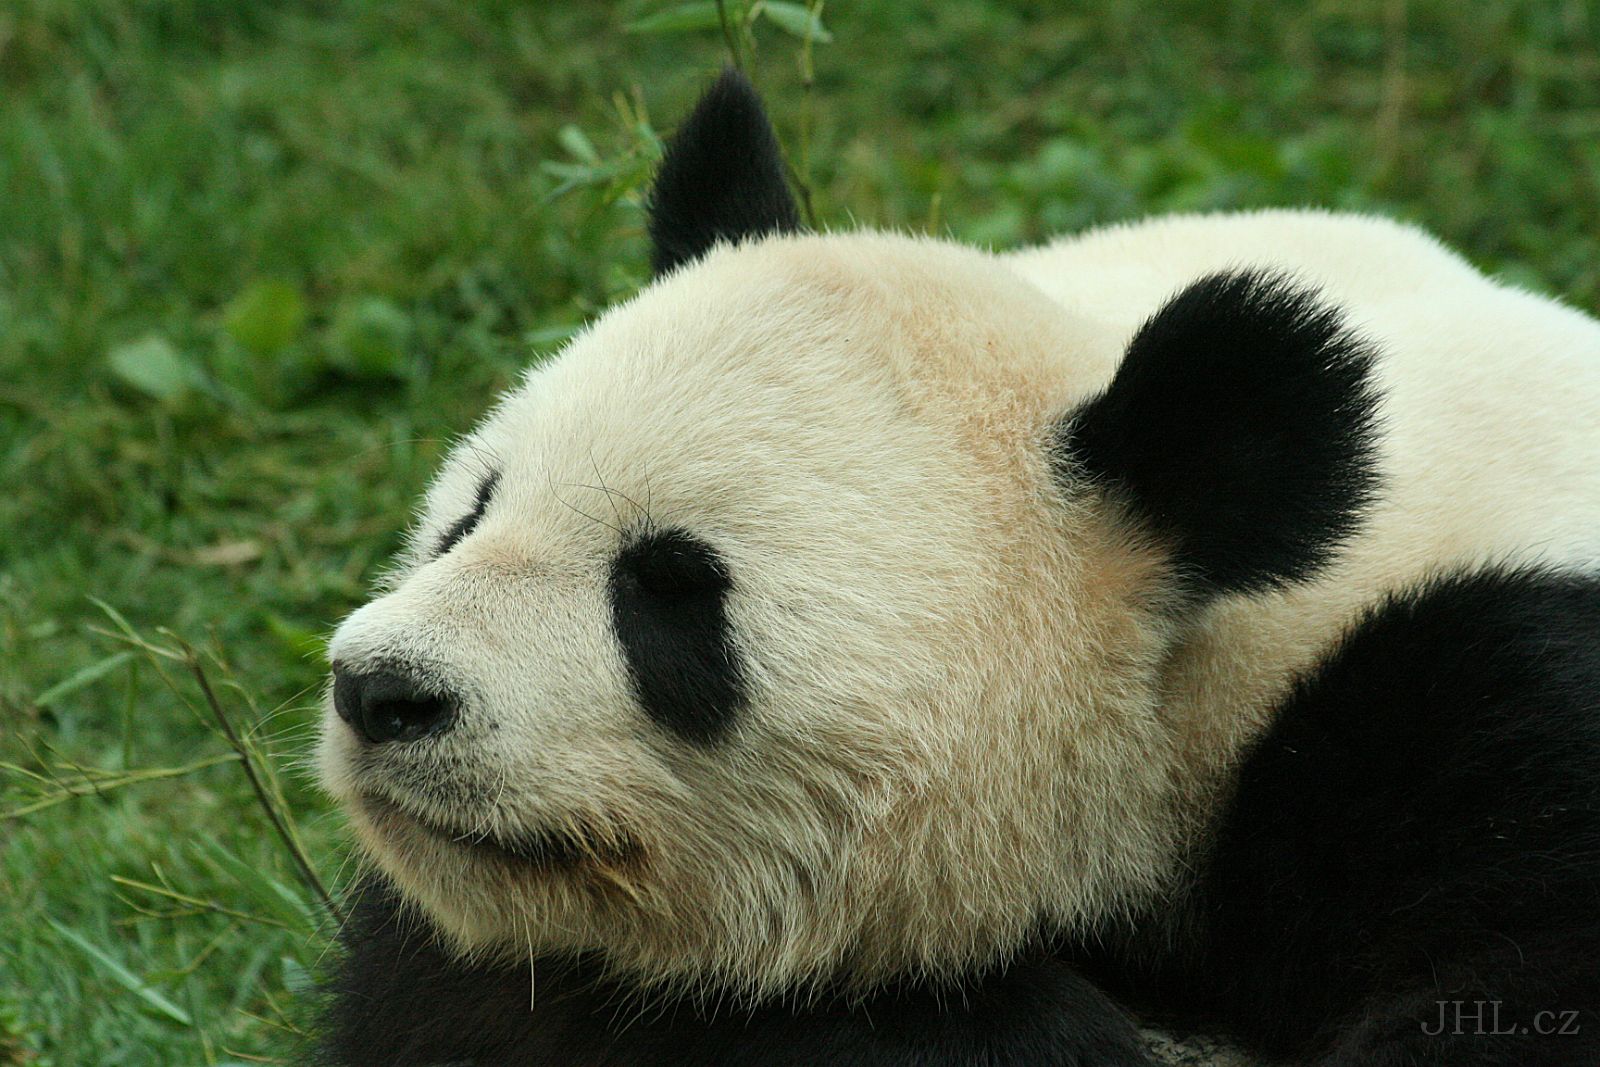 060917c715.JPG - Panda velká (Ailuropoda melanoleuca)